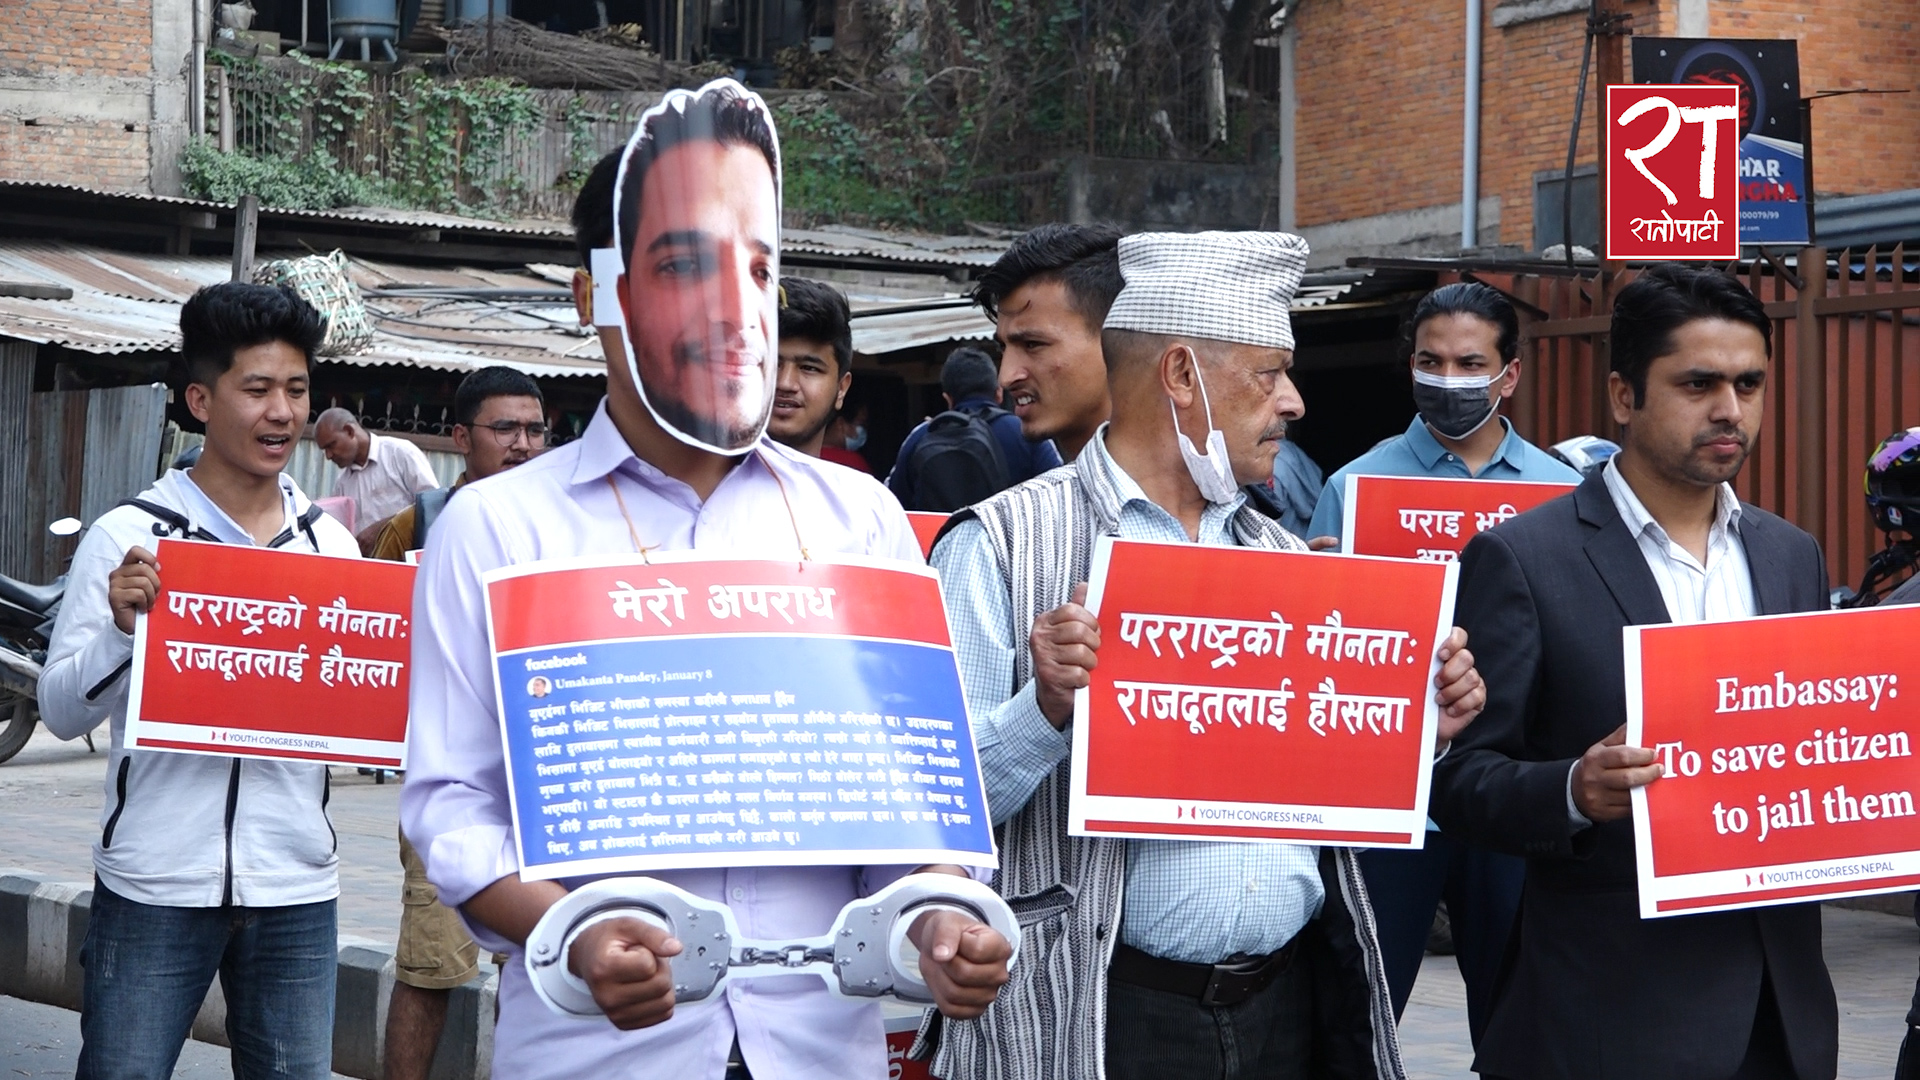 ४५ दिनदेखि आबुधावी जेलमा नेपाली पत्रकार, माइतीघर मण्डलामा प्रदर्शन (भिडियो)